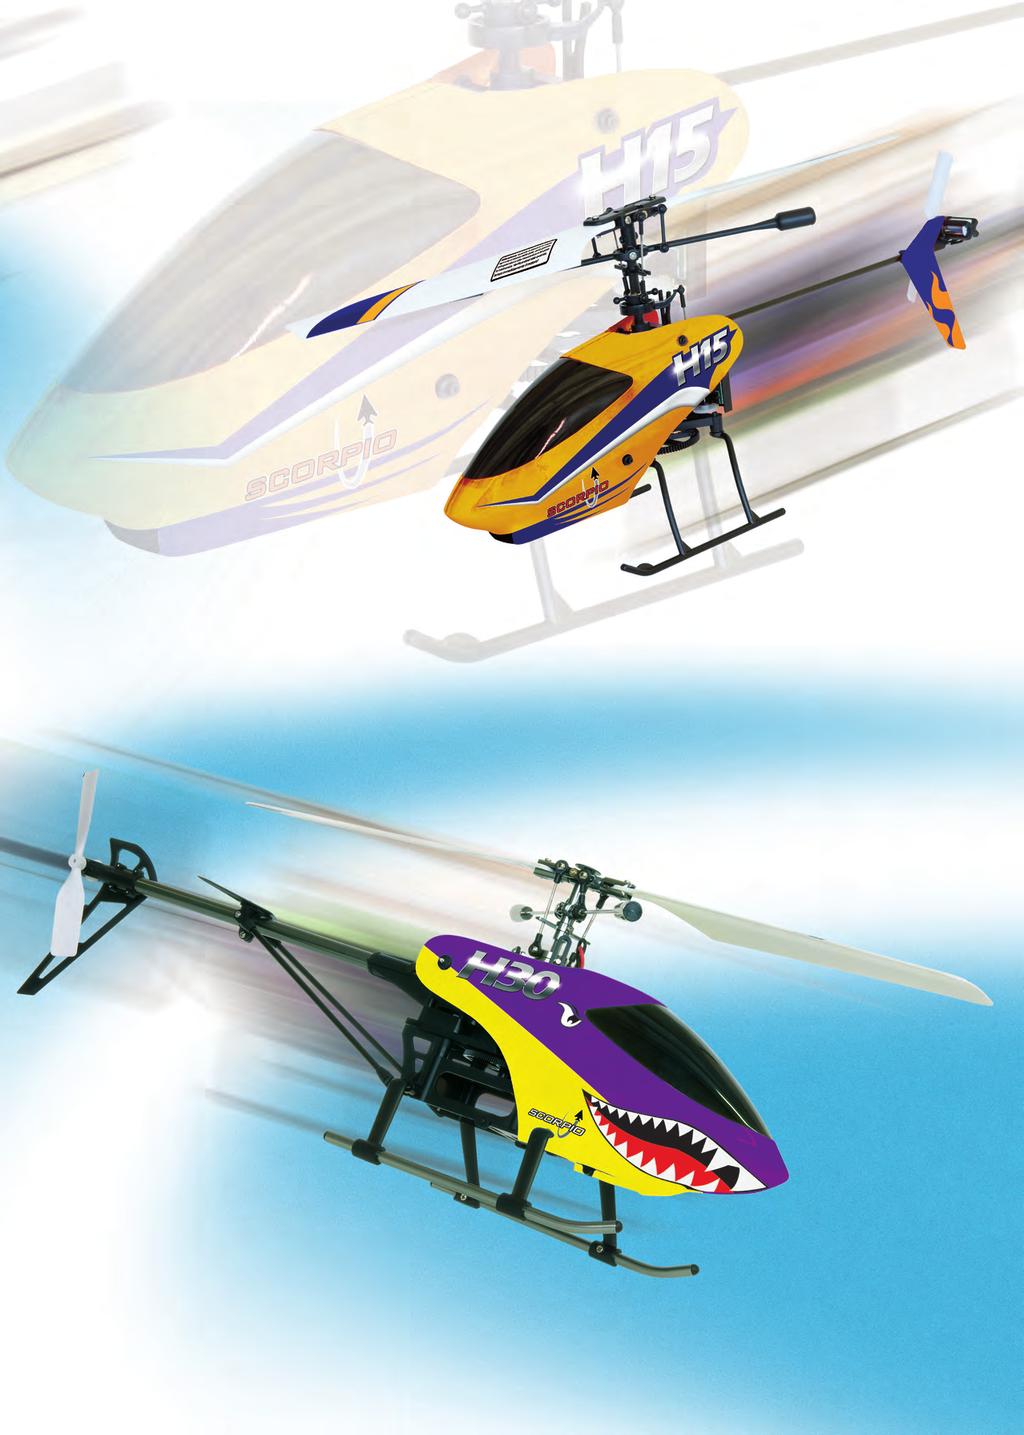 H15/H30 einrotorige Helikopter Single Rotor Helikopter für drinnen und draußen Die einrotorigen Hubschrauber H15 und H30 von Scorpio sind professionelle Einstiegsmöglichkeiten für alle, die aktiver